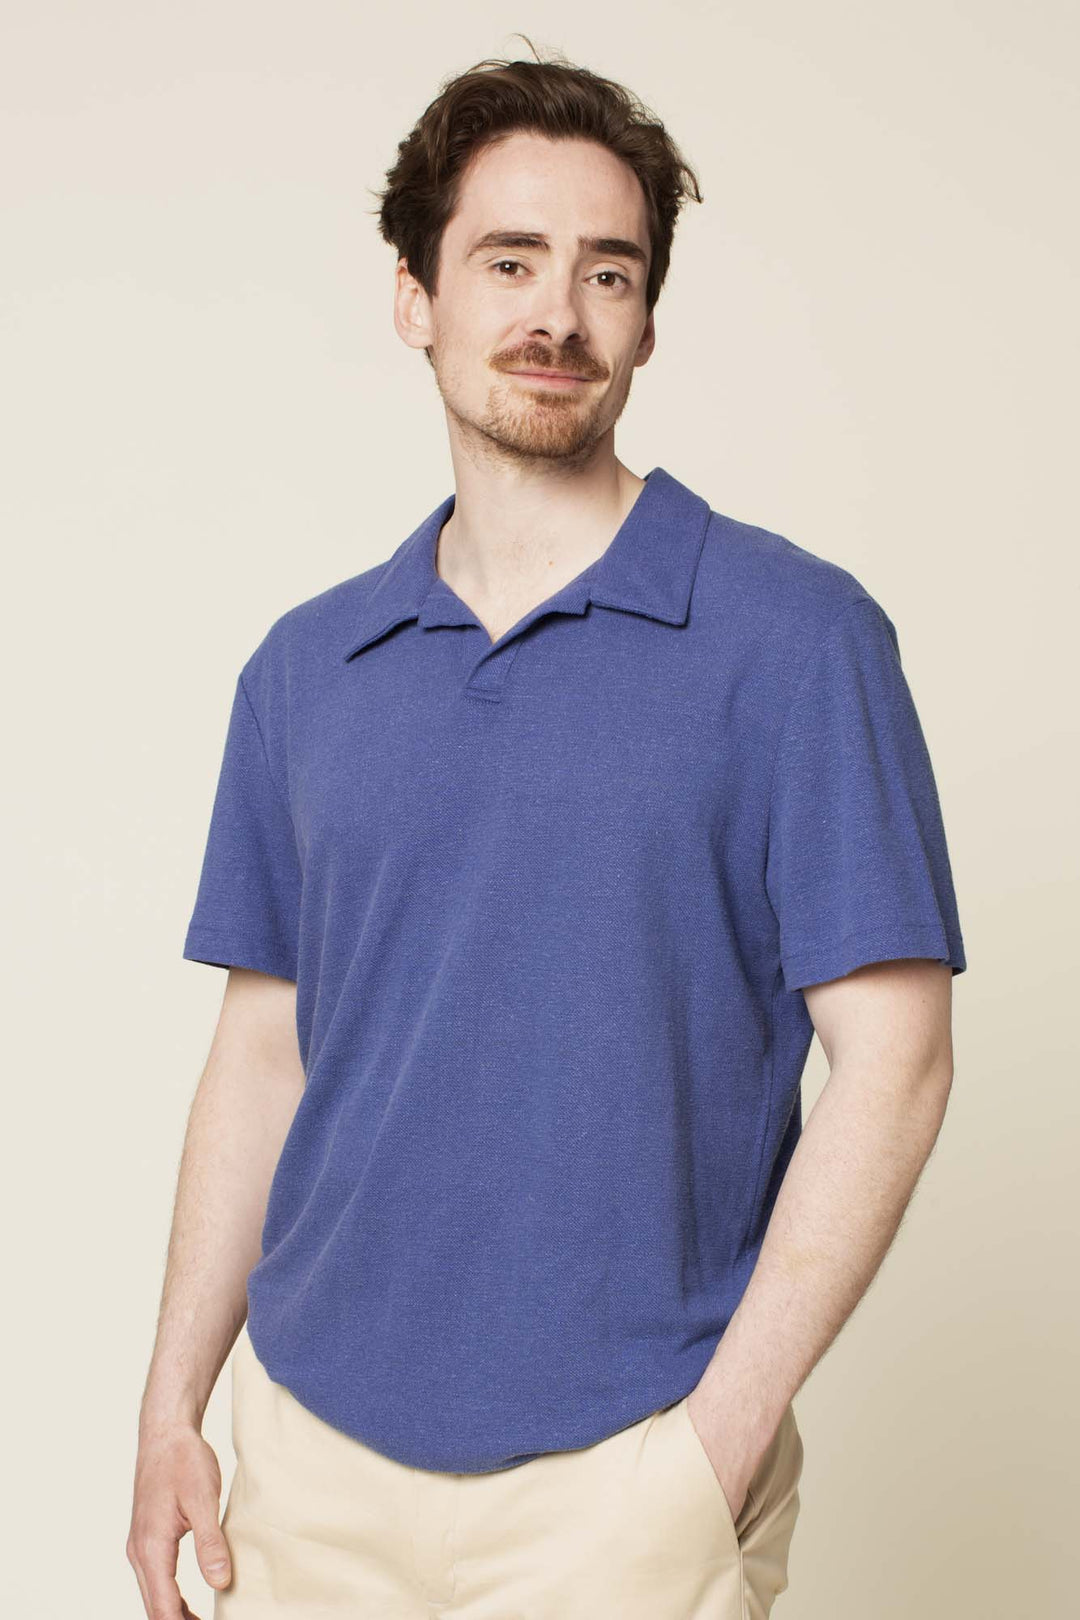 Polo T-shirt Printed pattern- Men's Sizes 2XS-4XL